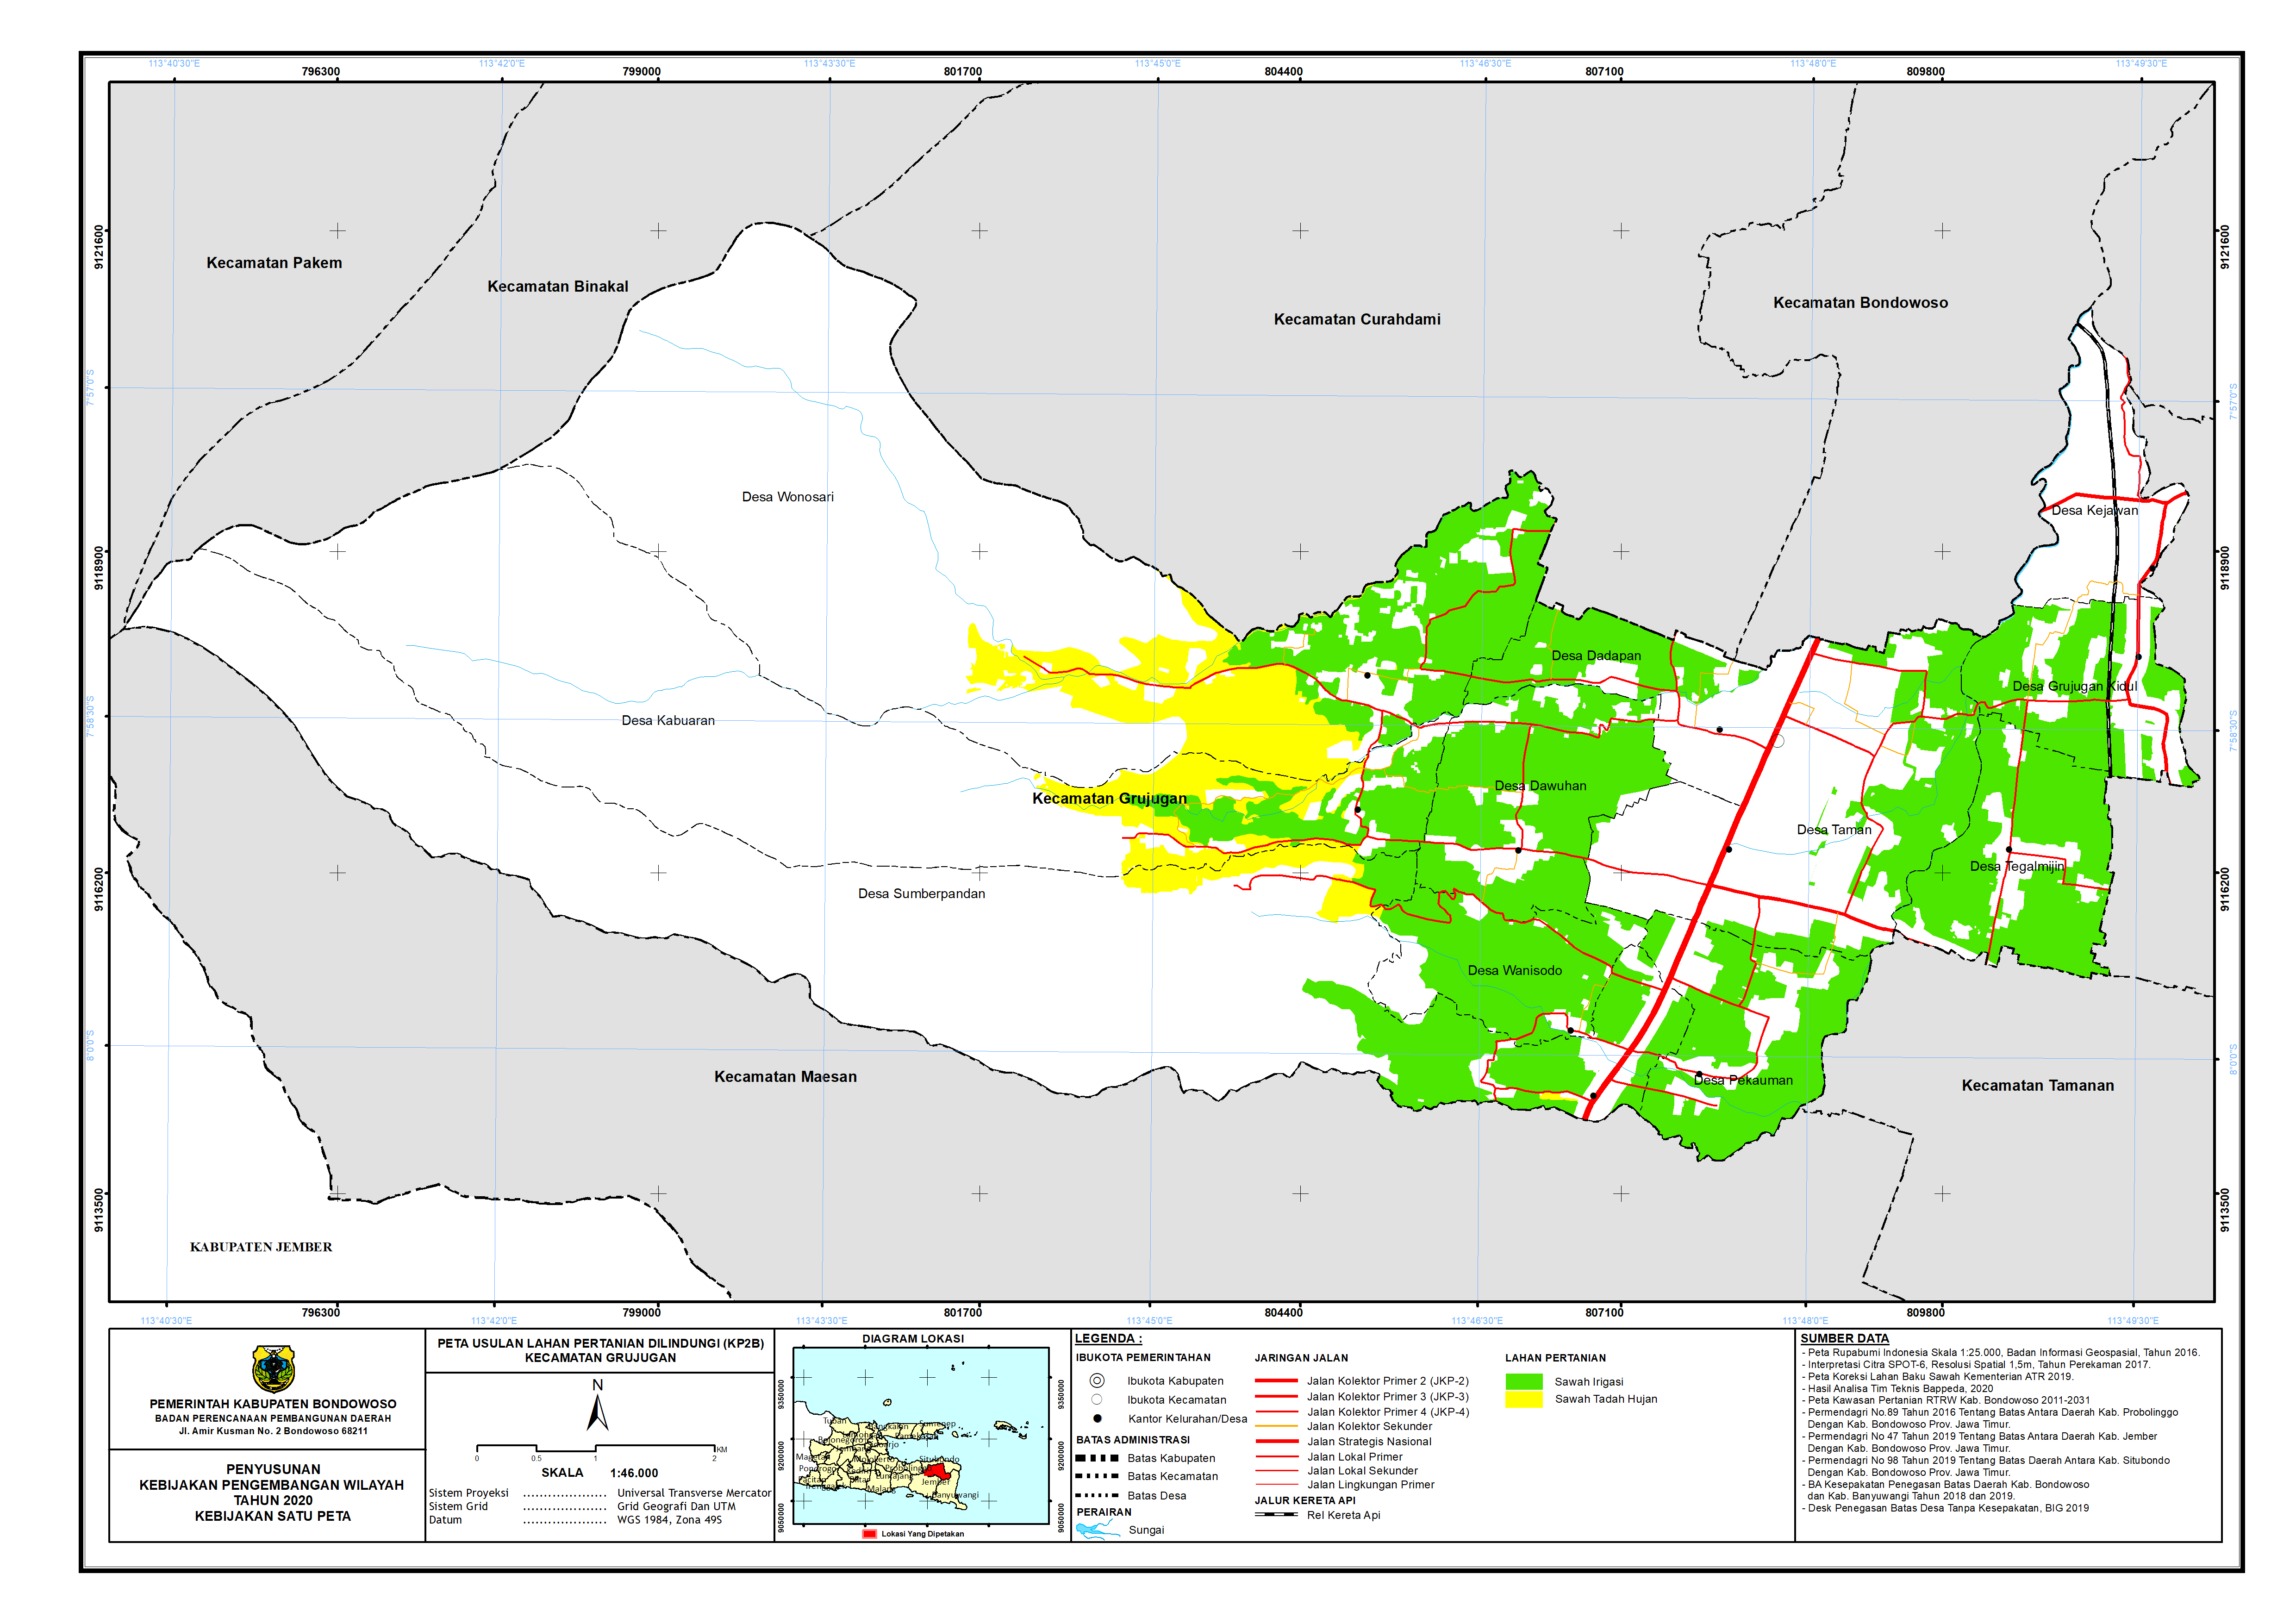 Peta Usulan Lahan Pertanian  Dilindungi Kecamatan Grujugan.png